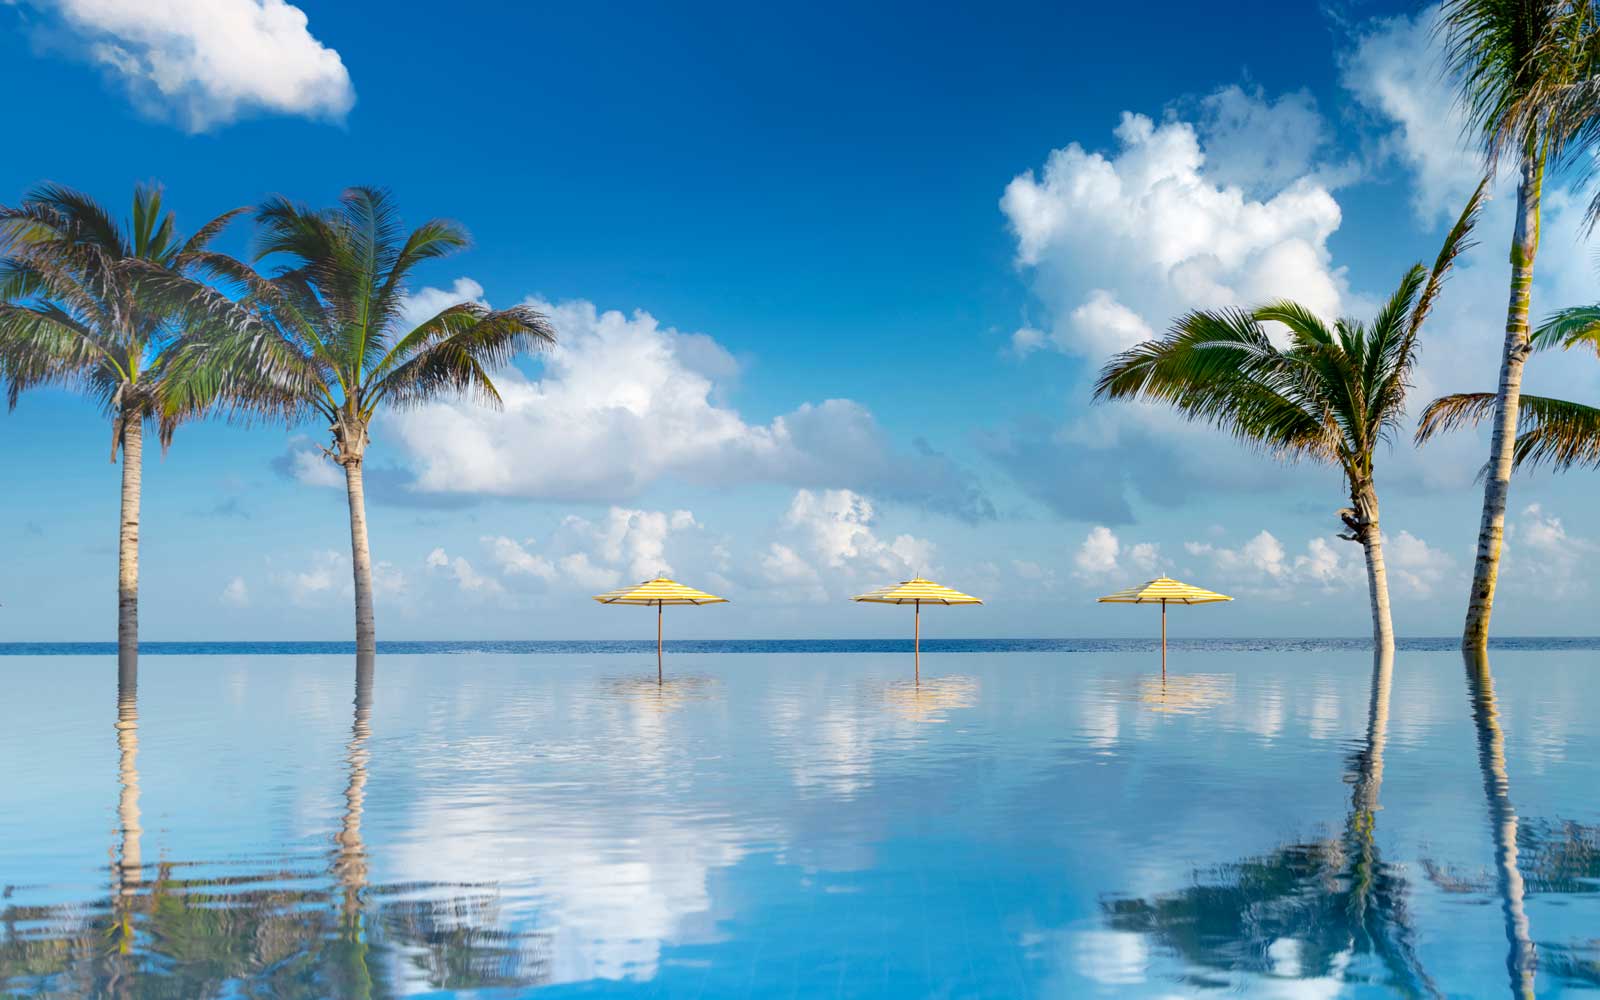 infinity pool overlooking the ocean in jamaica